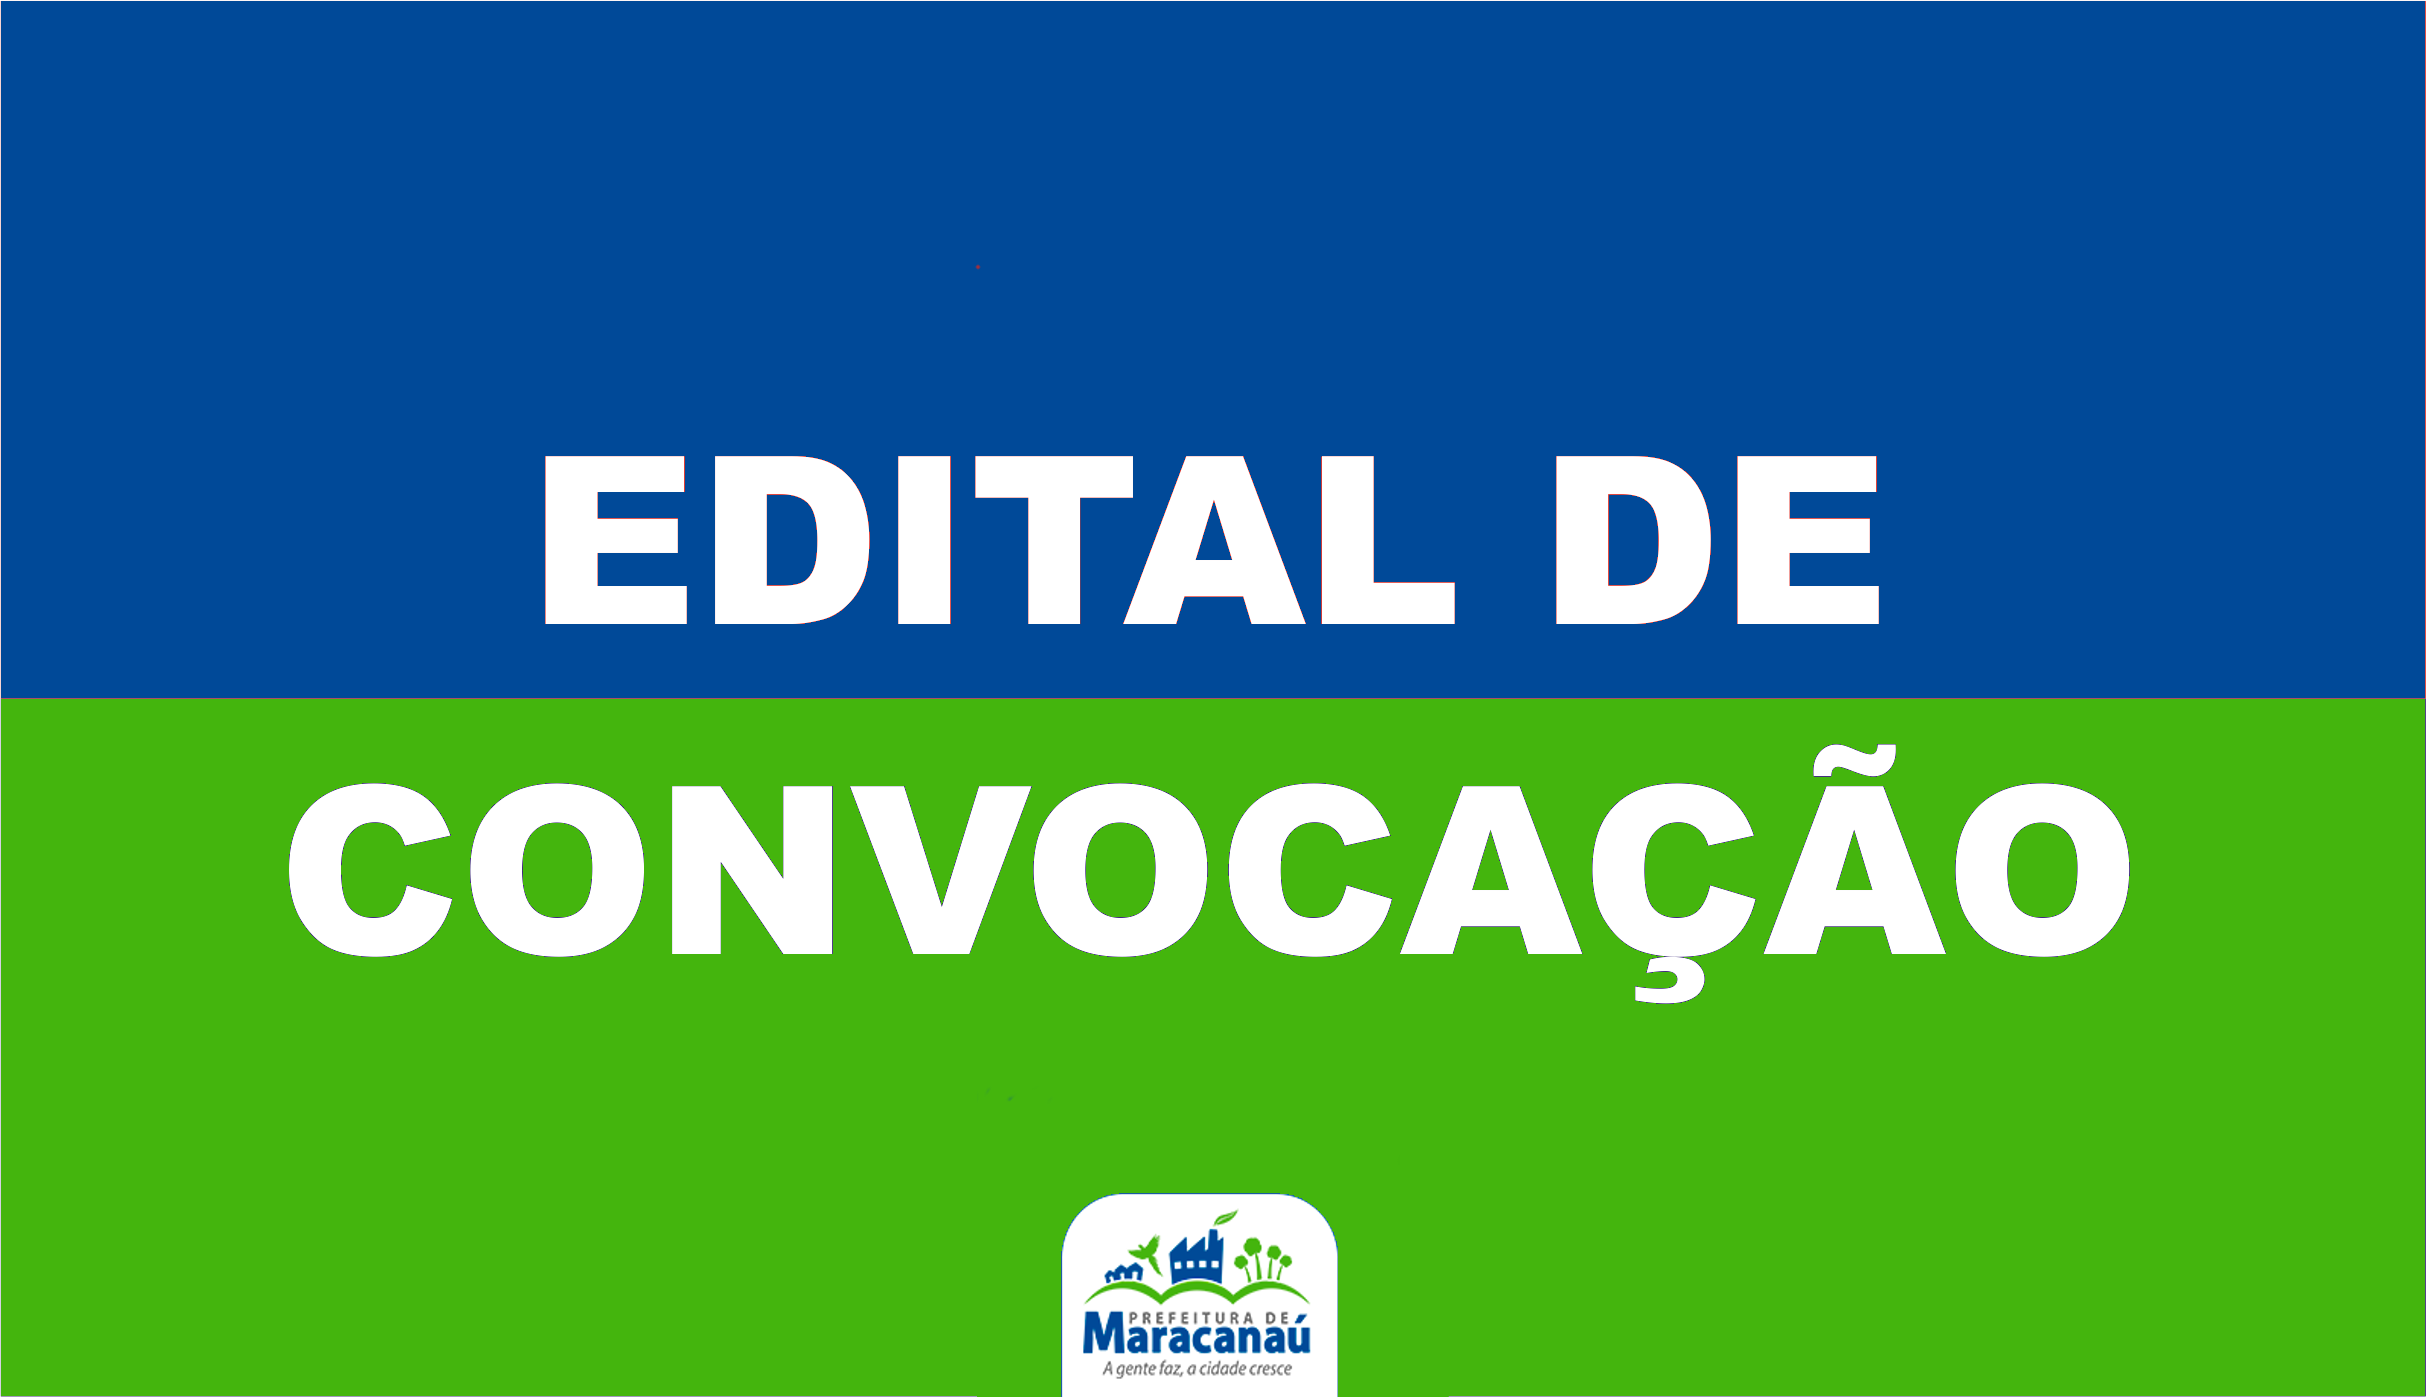 You are currently viewing Prefeitura convoca Auxiliar Administrativo e Auxiliar de Serviços Gerais